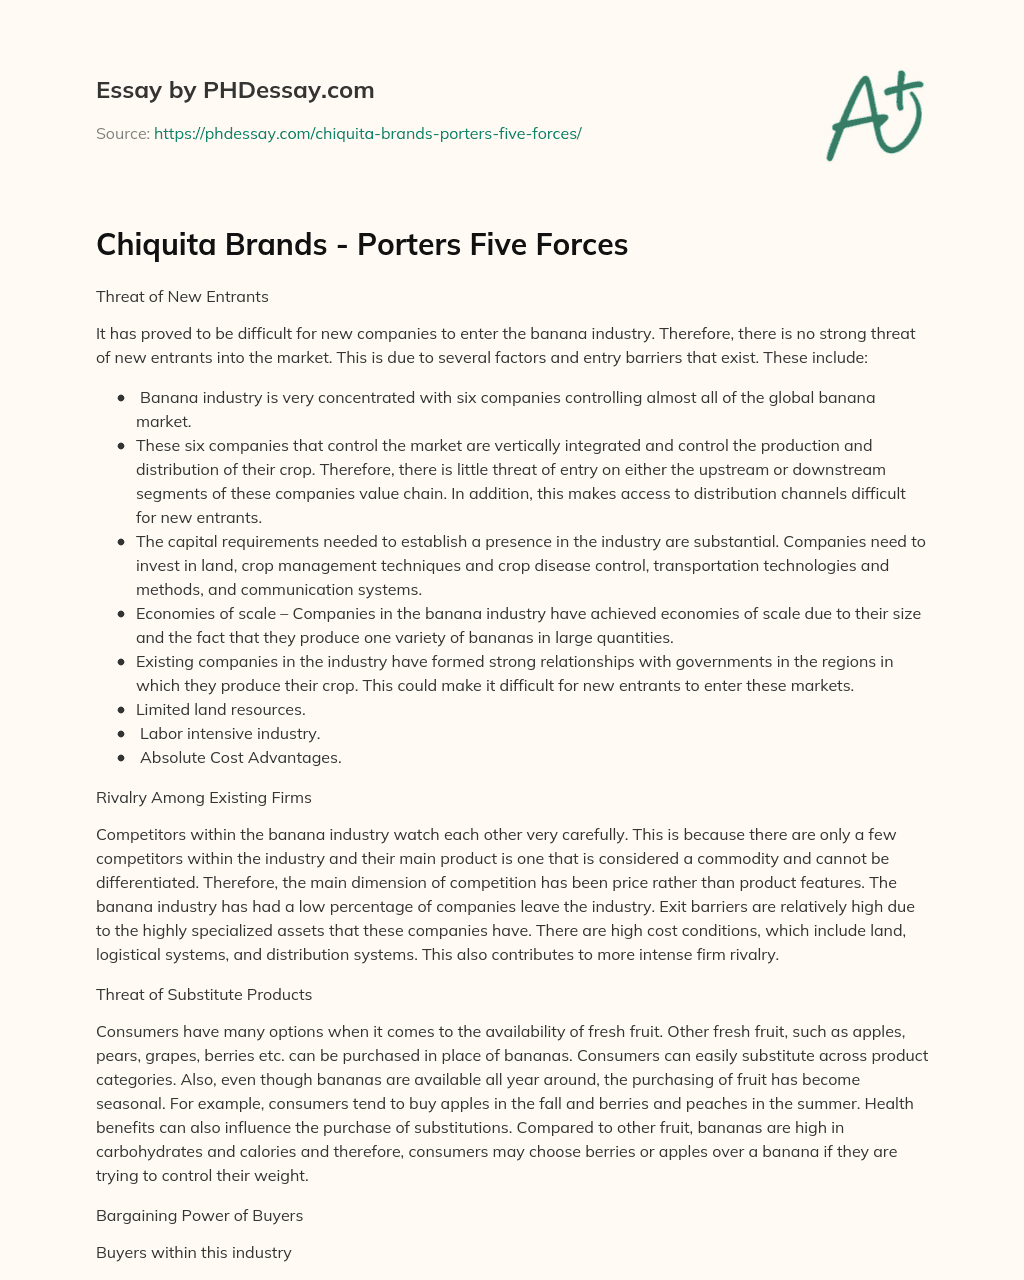 Chiquita Brands – Porters Five Forces essay